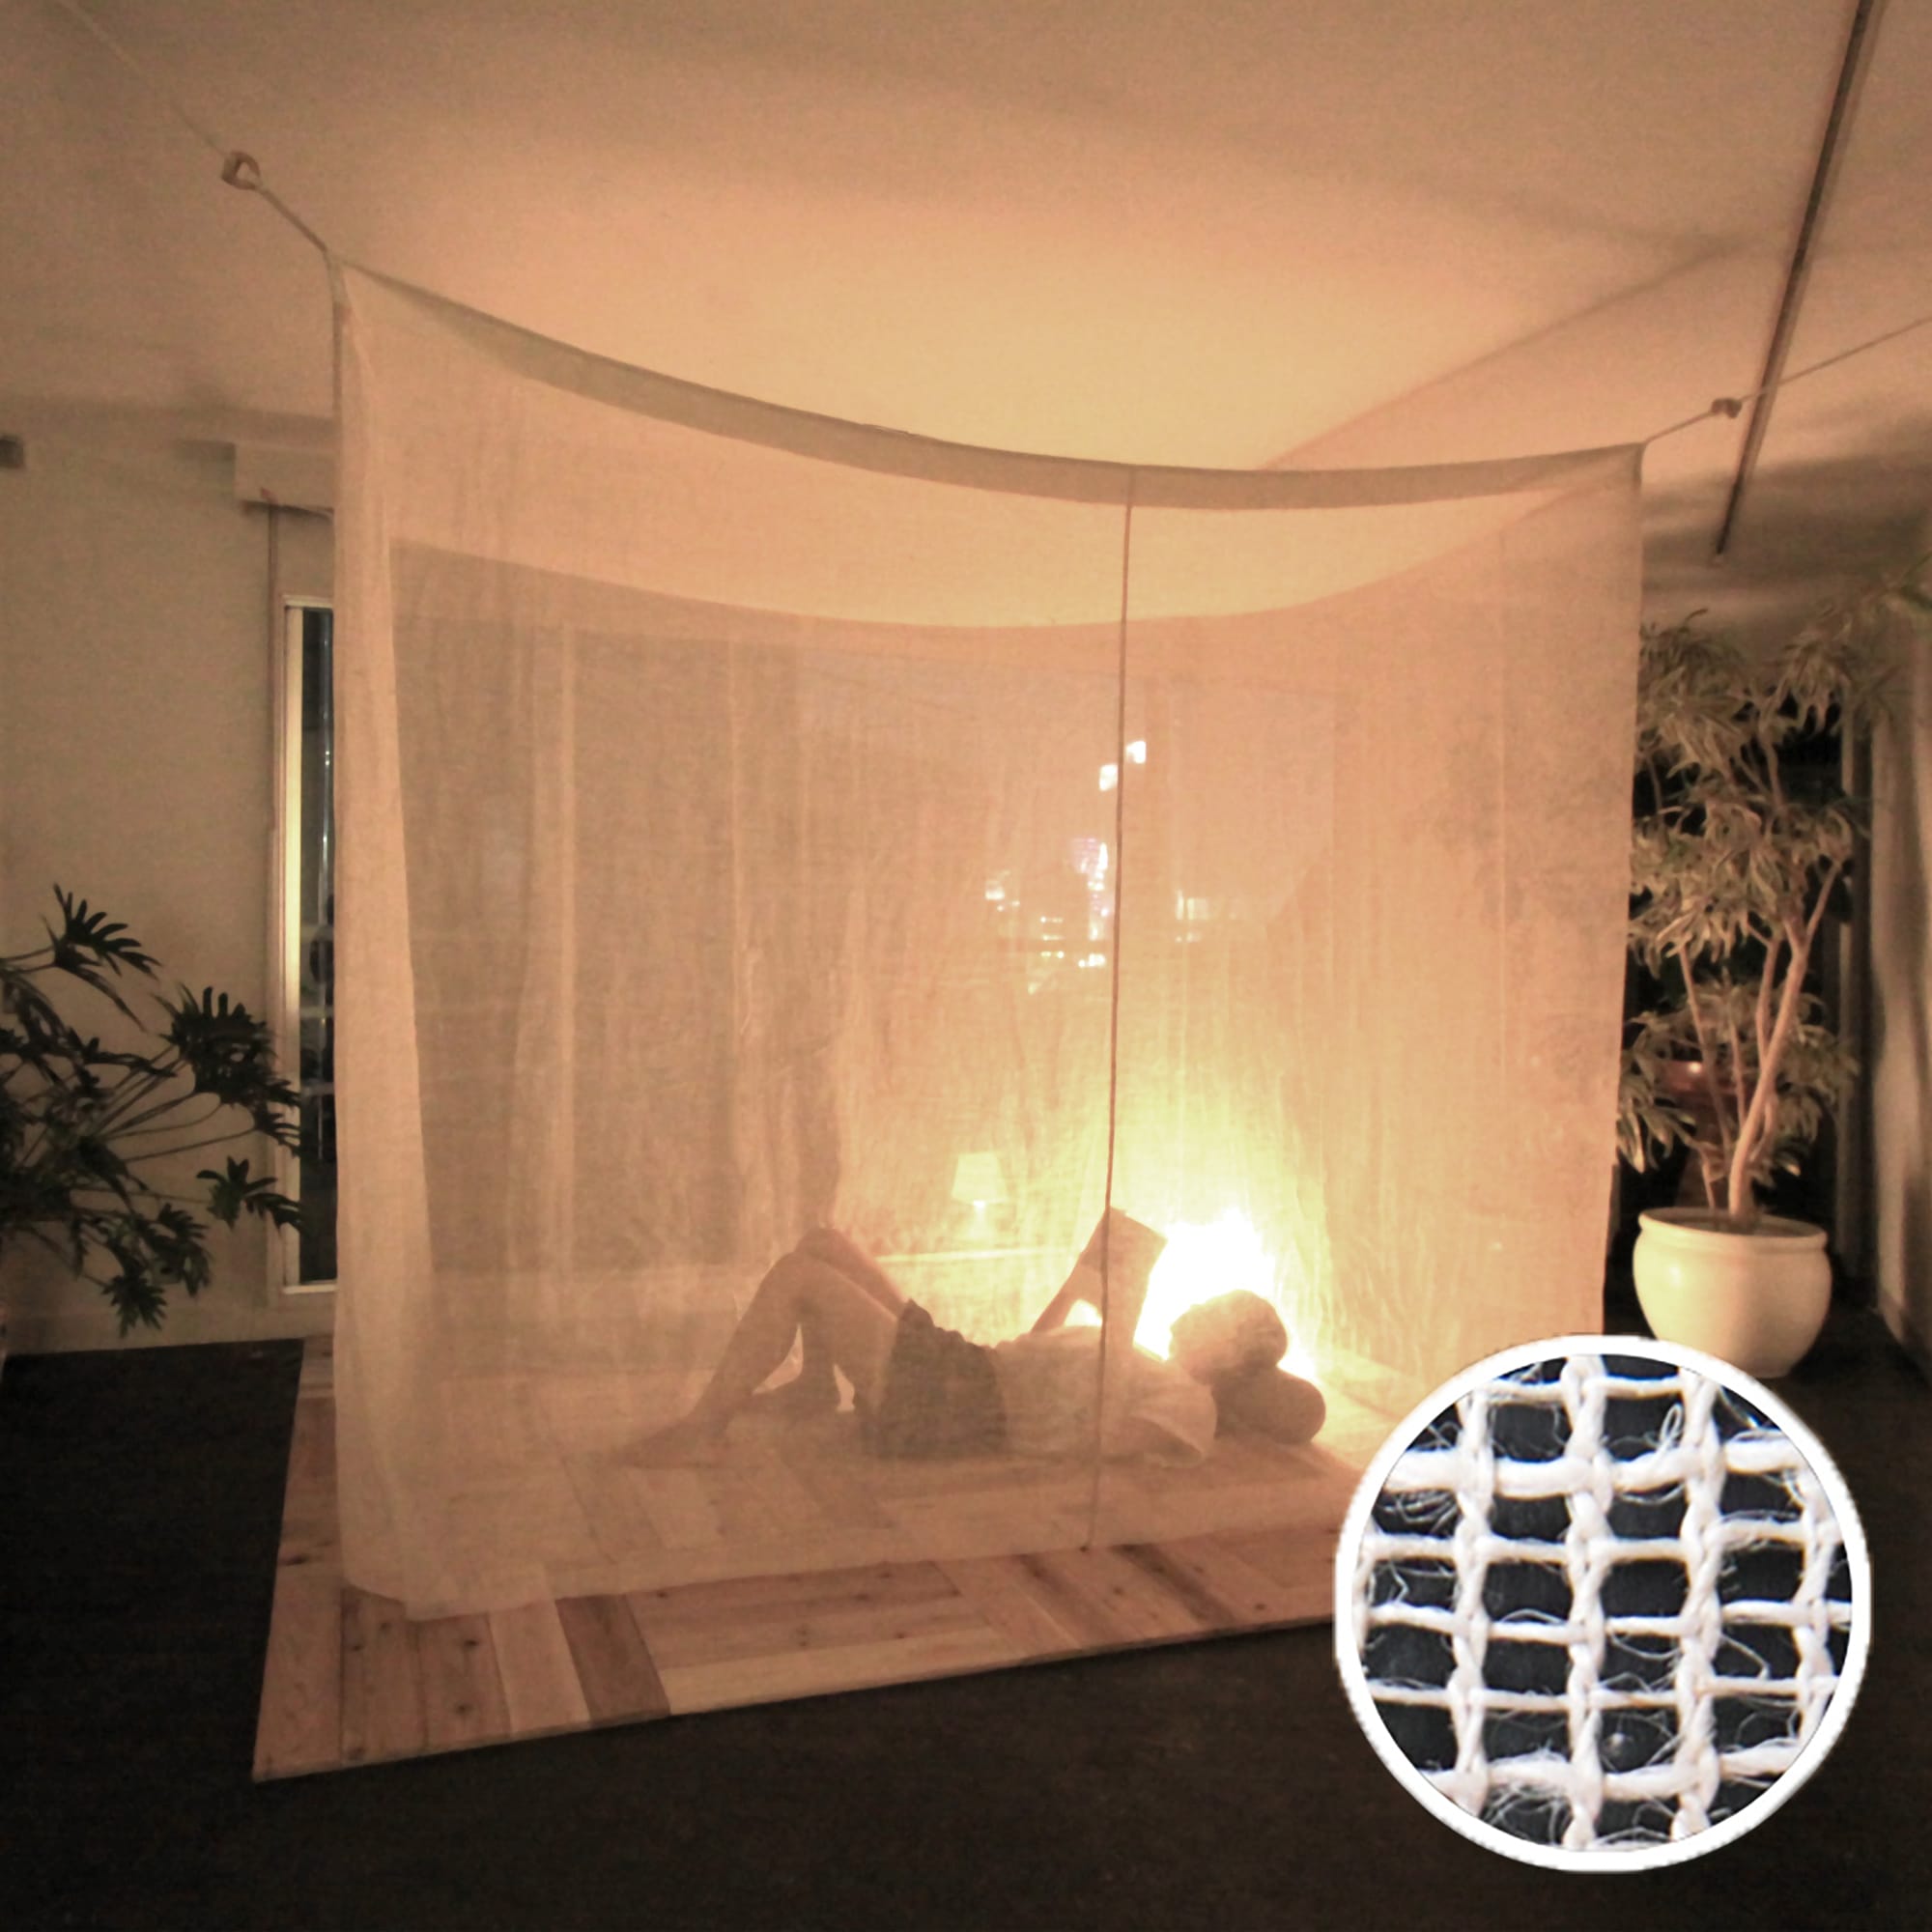 麻の蚊帳 ヘンプの蚊帳 ET-BO003-03-G048 ヘンプの蚊帳。6種類のサイズがあります。